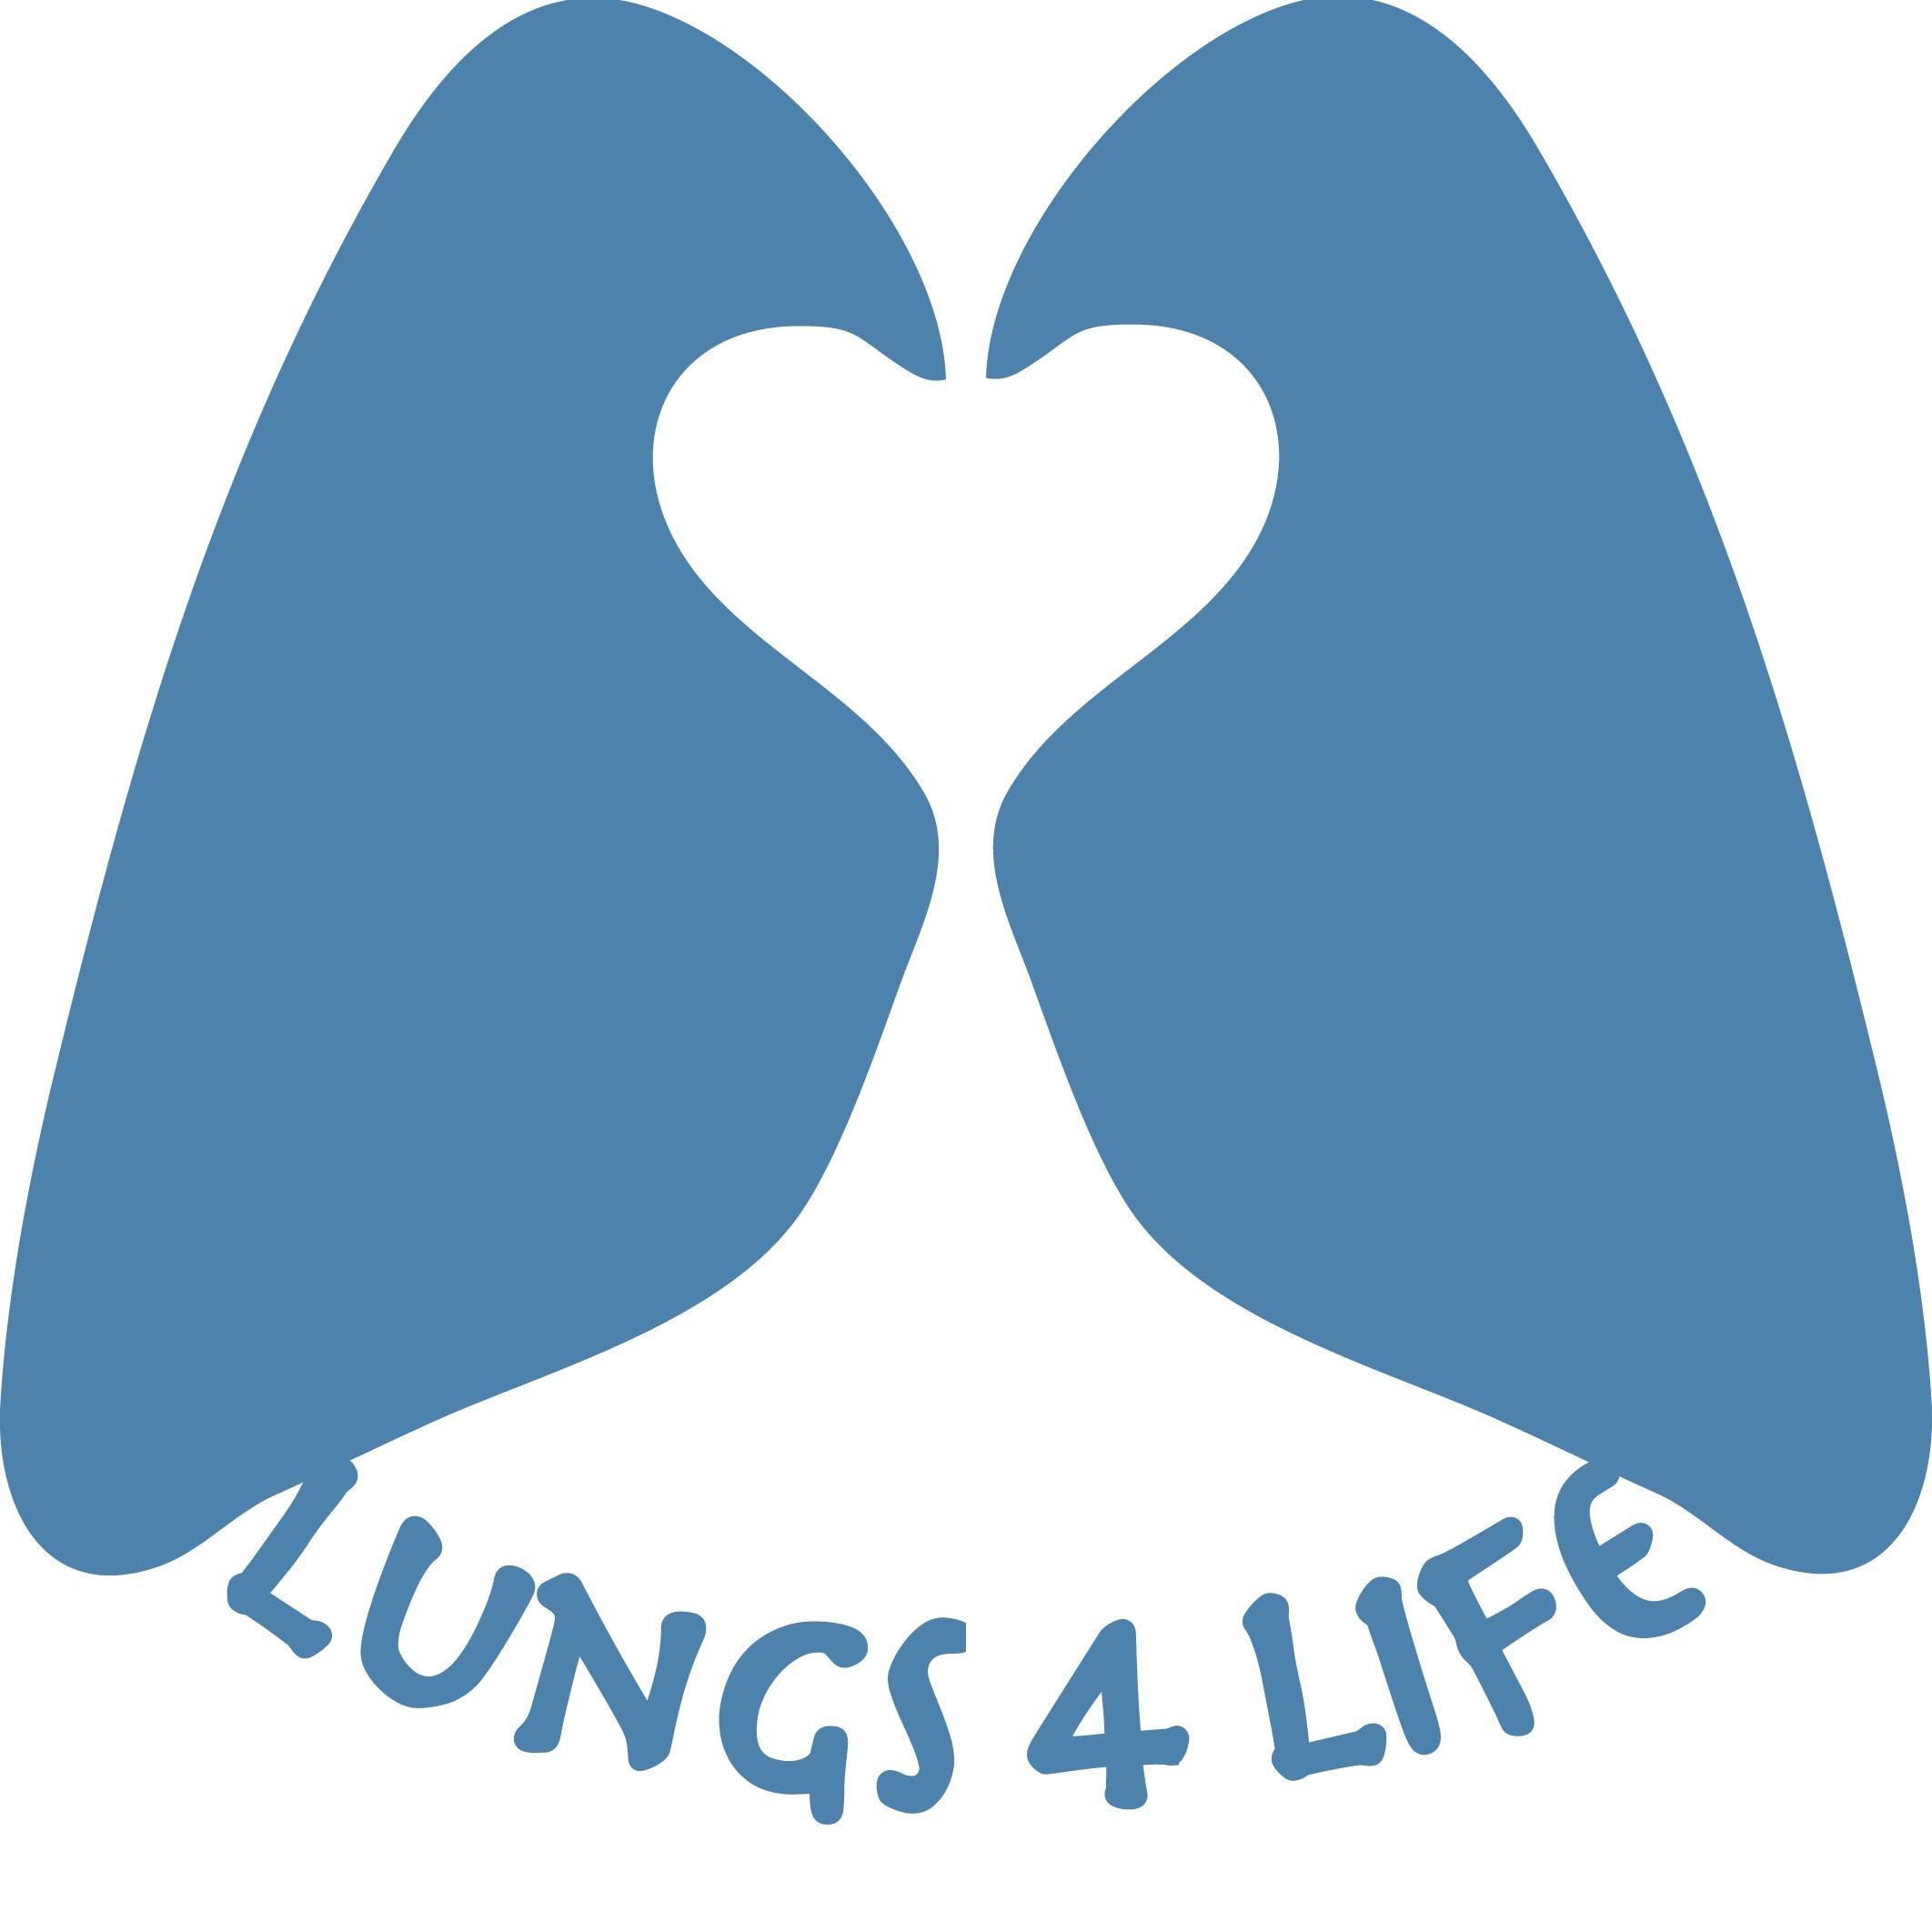 Historia de un Cáncer de Pulmón El día a día con una enfermedad incurable #Cancer #CancerdePulmon #LungCancer